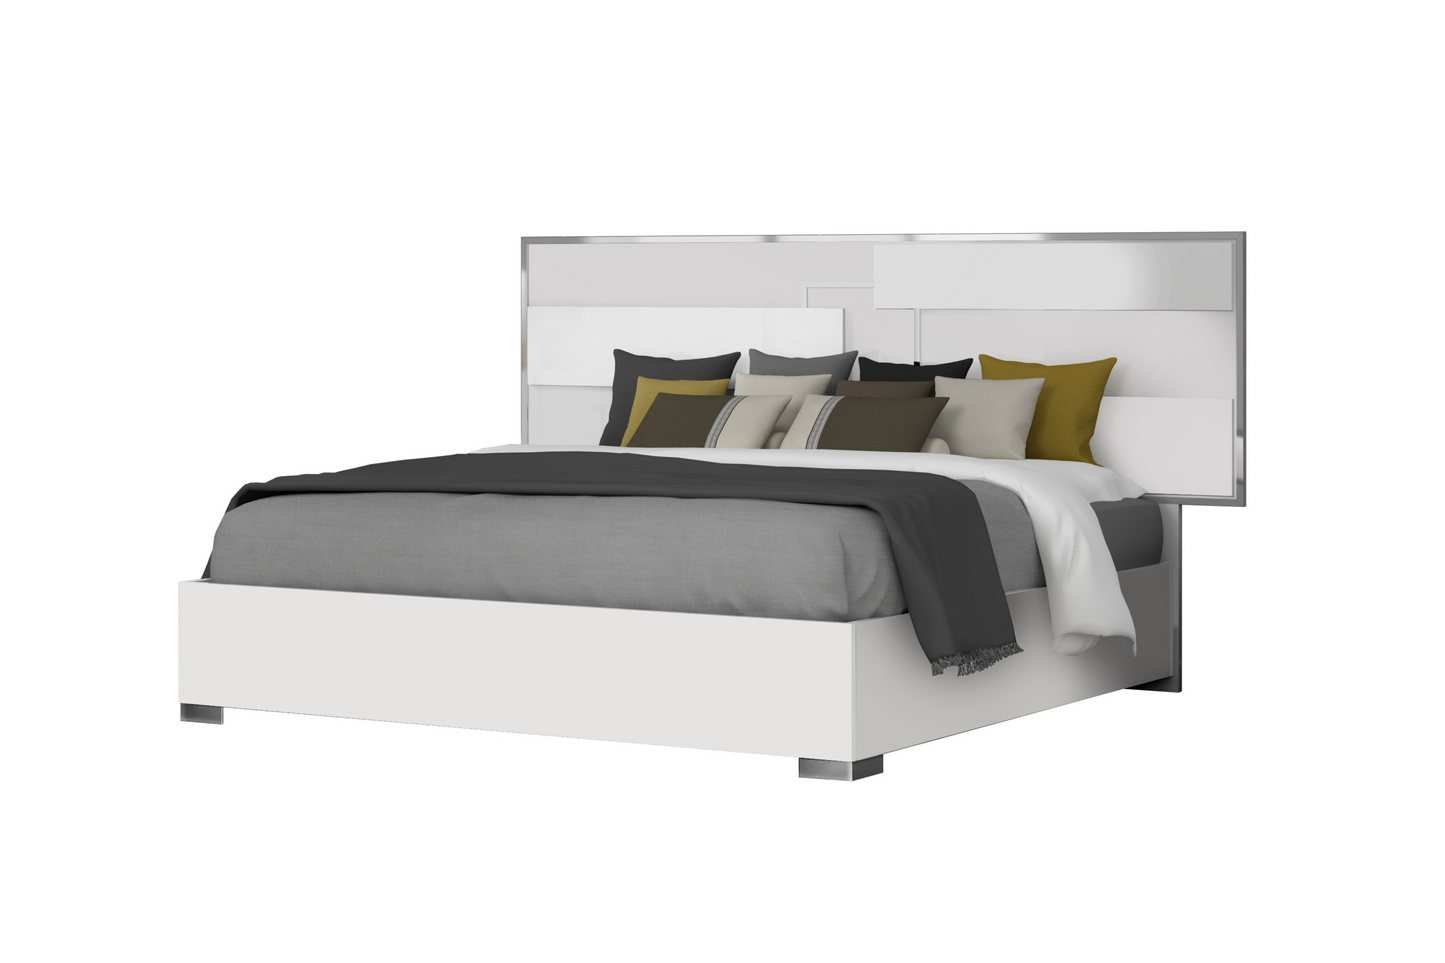 Infinity Premium Bedroom Bed SKU: 17441